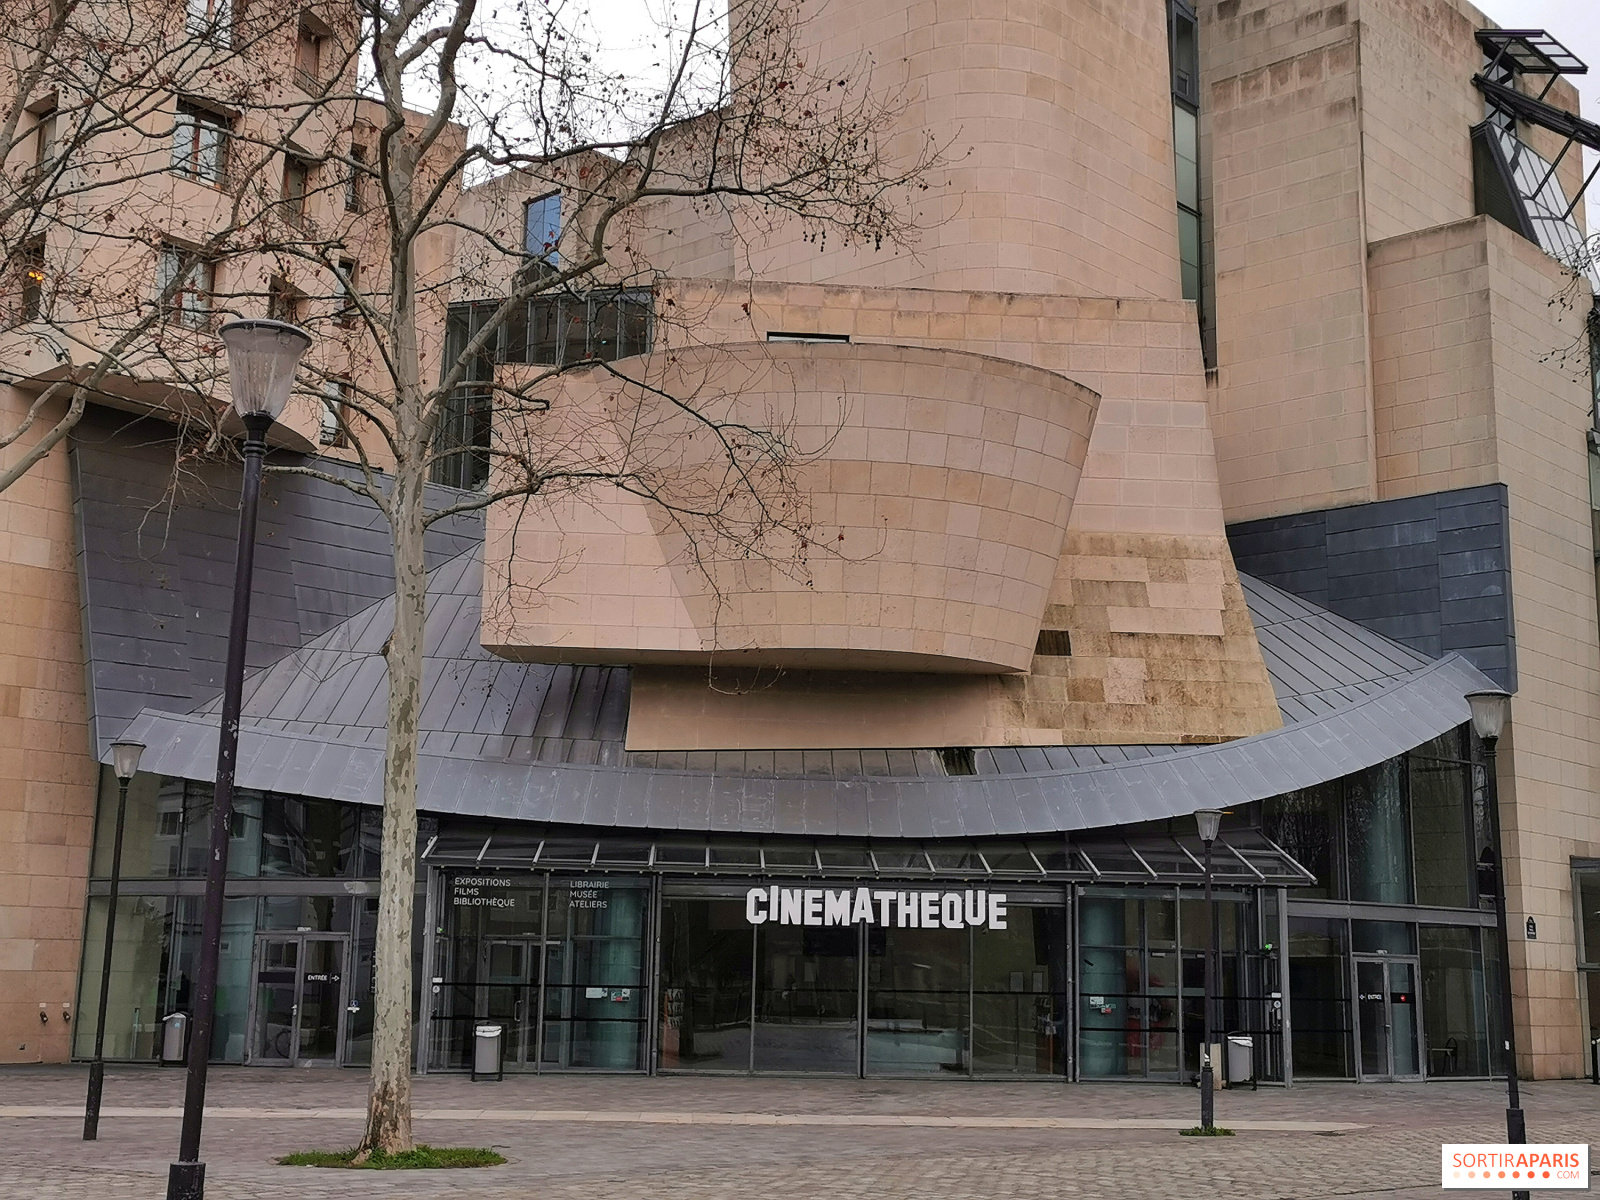 La Cinémathèque française : un temple du cinéma au coeur de Bercy - Sortiraparis.com